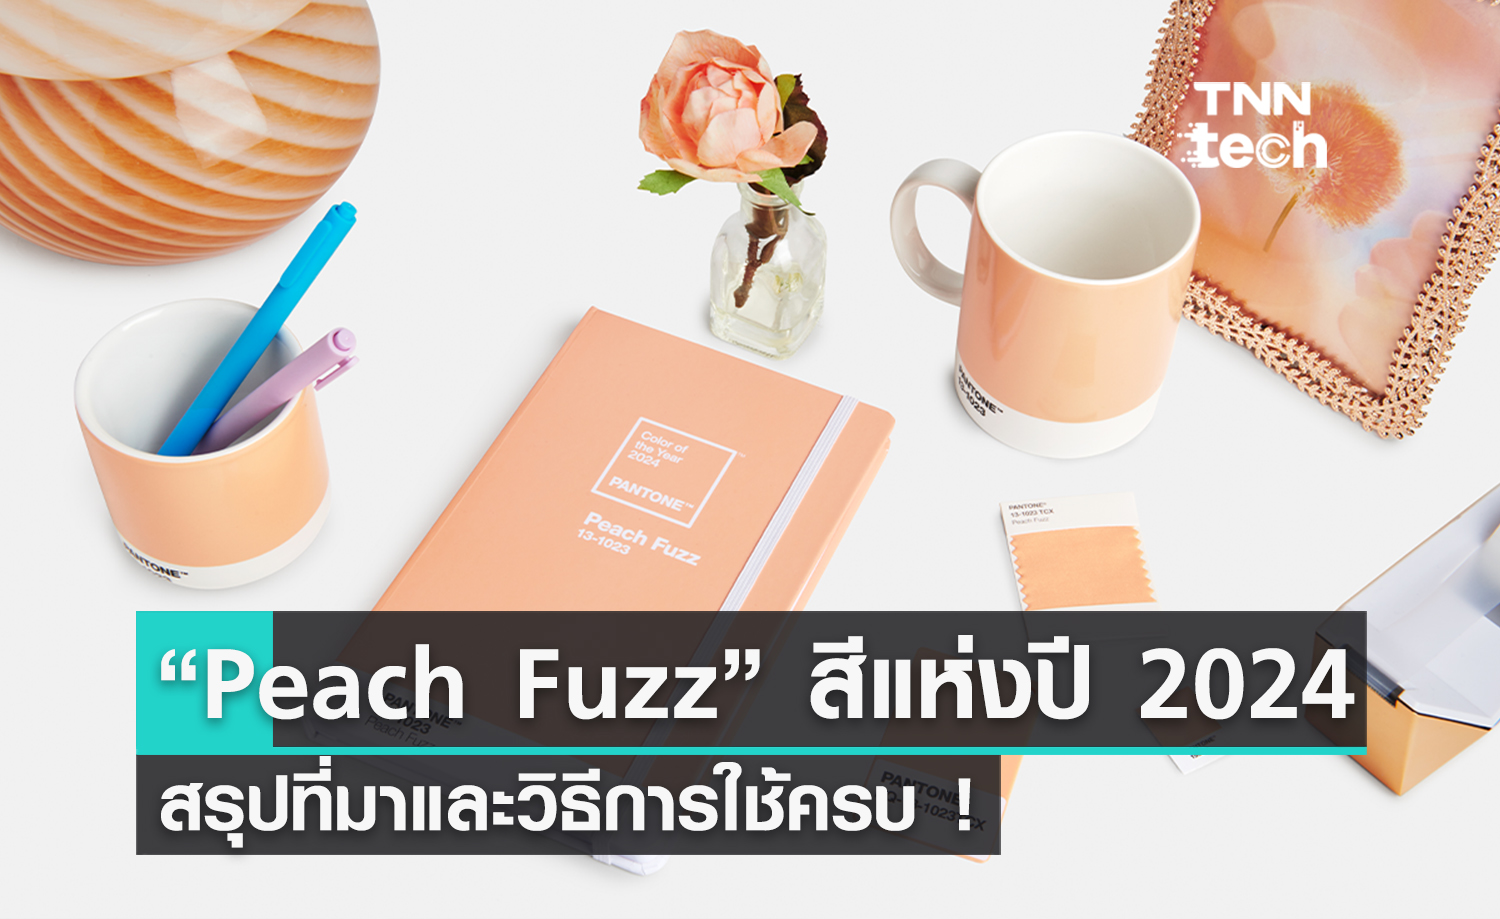 มาแล้ว ! “Peach Fuzz”​ เป็น Color of The Year 2024 สีใหม่ใช้ในปีหน้า มาพร้อมวิธีใช้งานกับทุกการออกแบบ